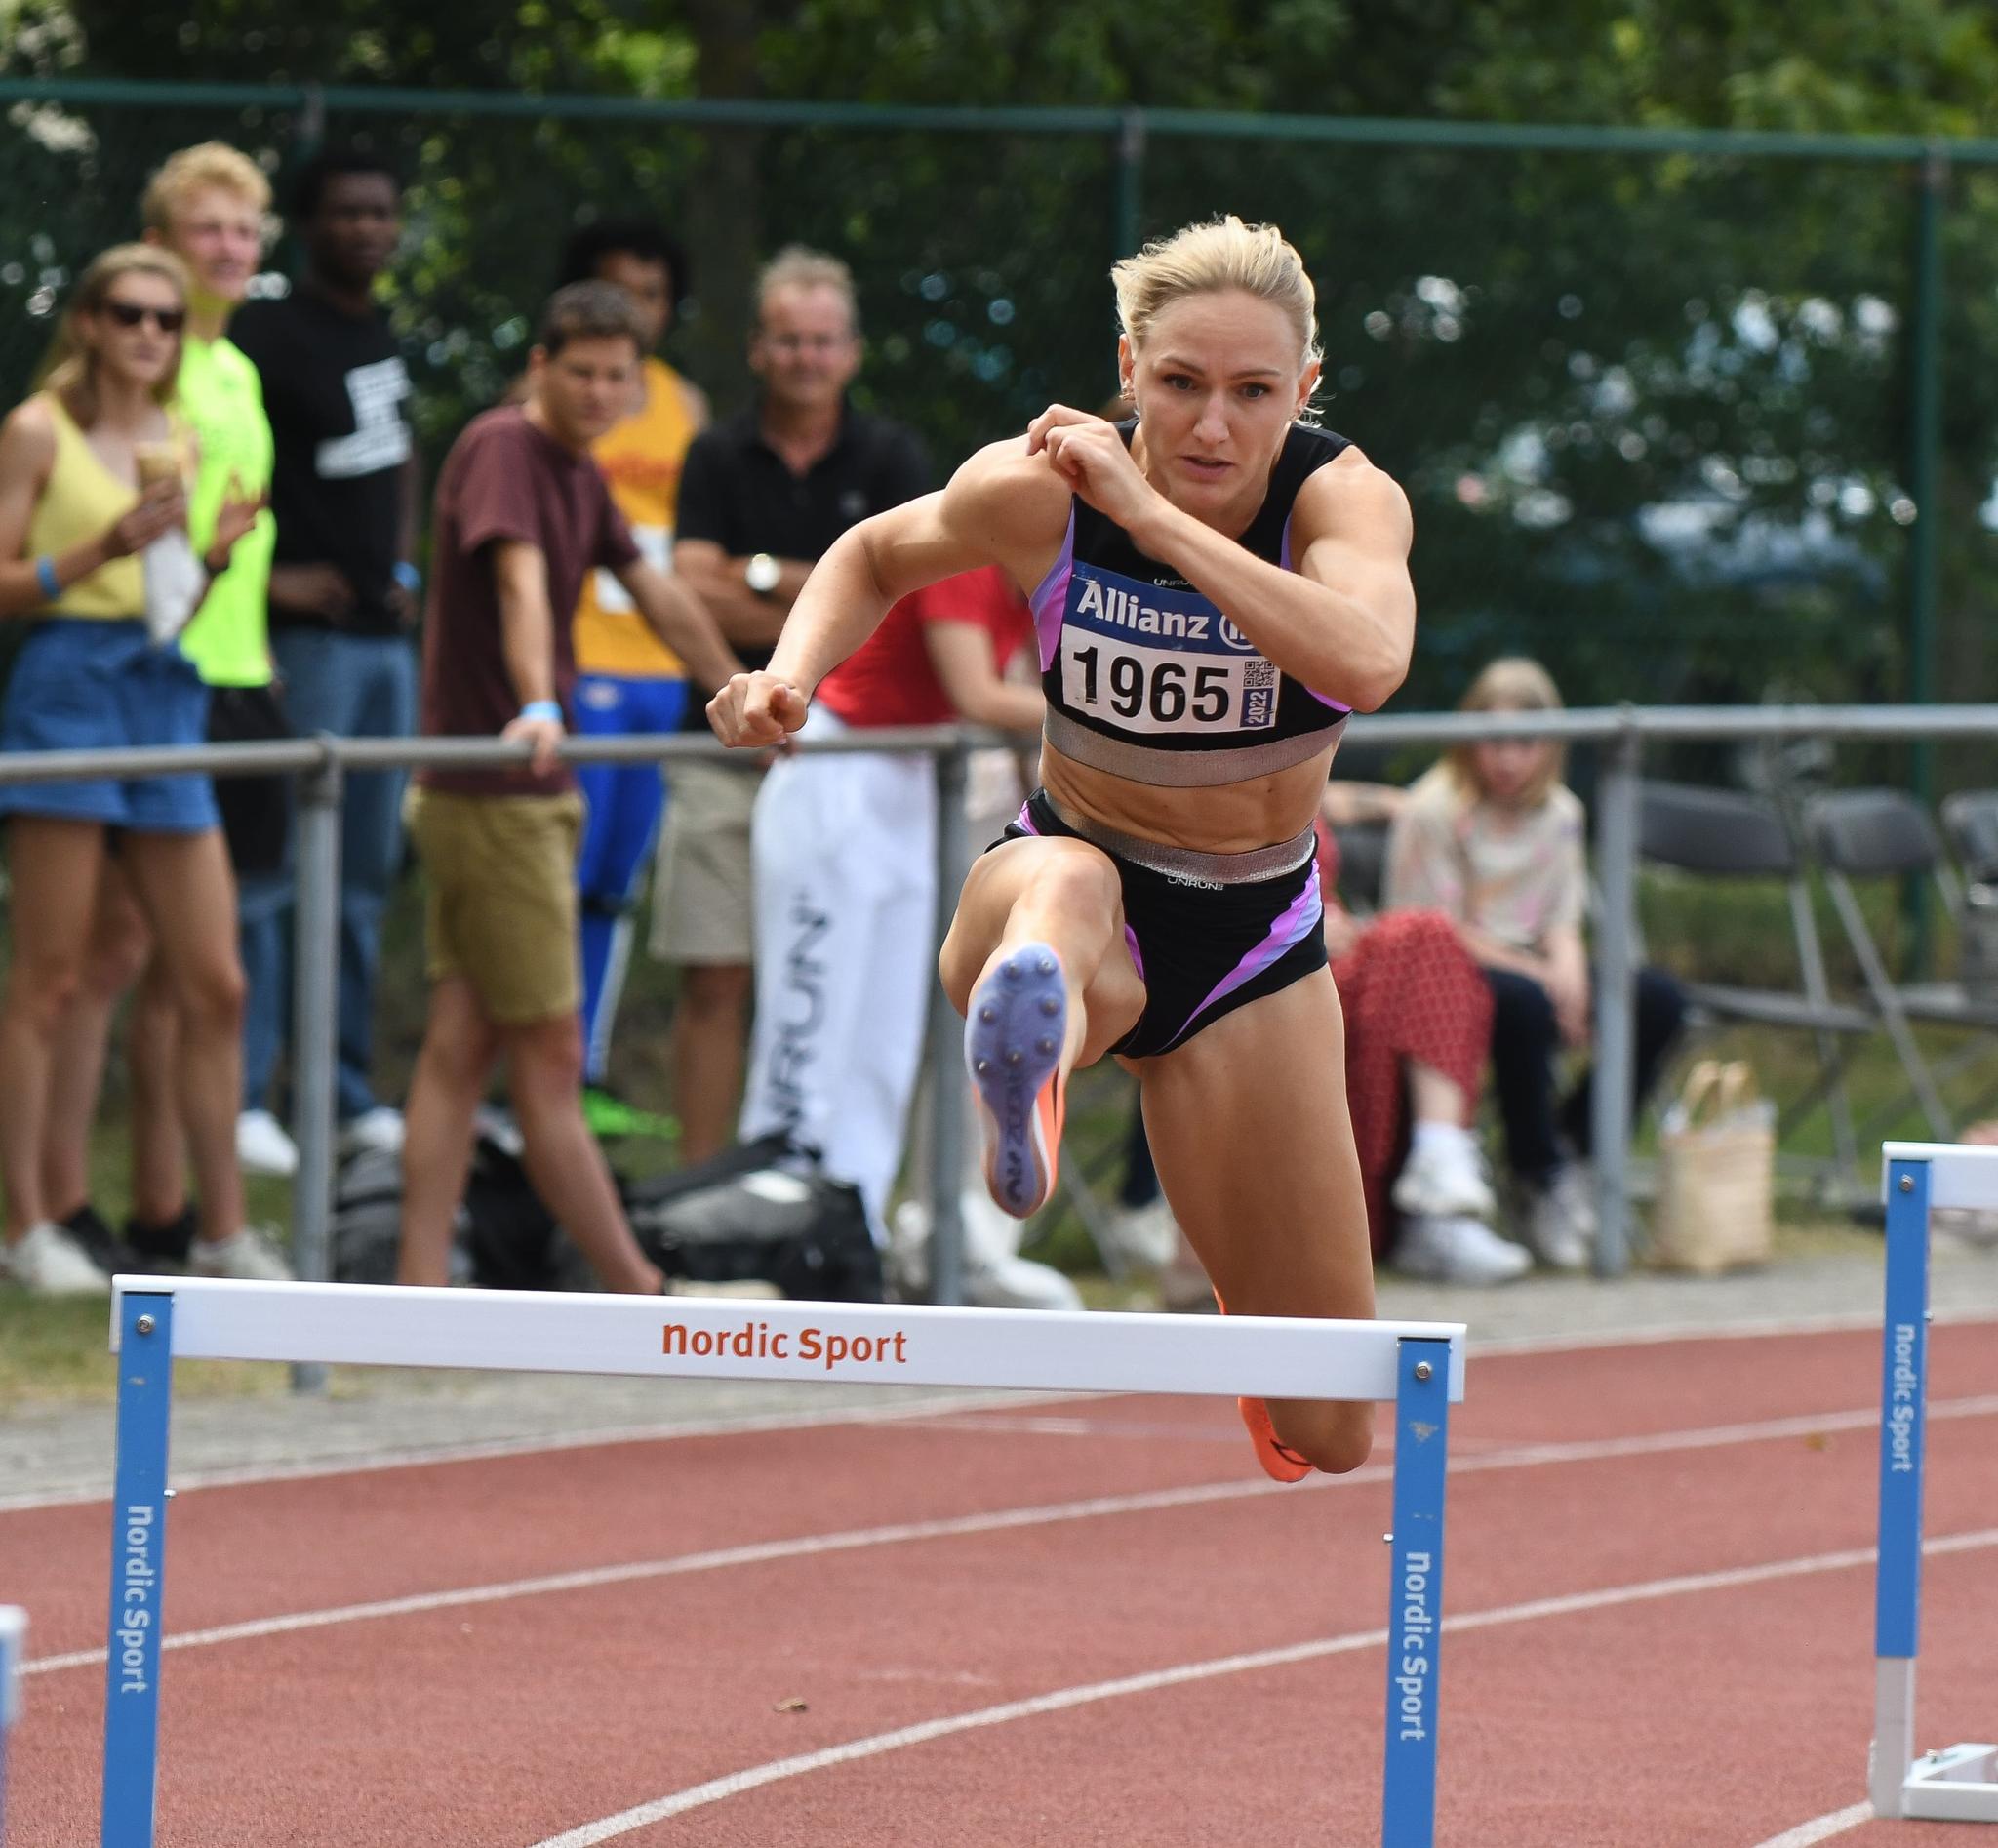 Hanne Claes Toont Topvorm Op 400m Horden Vlak Voor Ek Vlaamse Atletiekliga